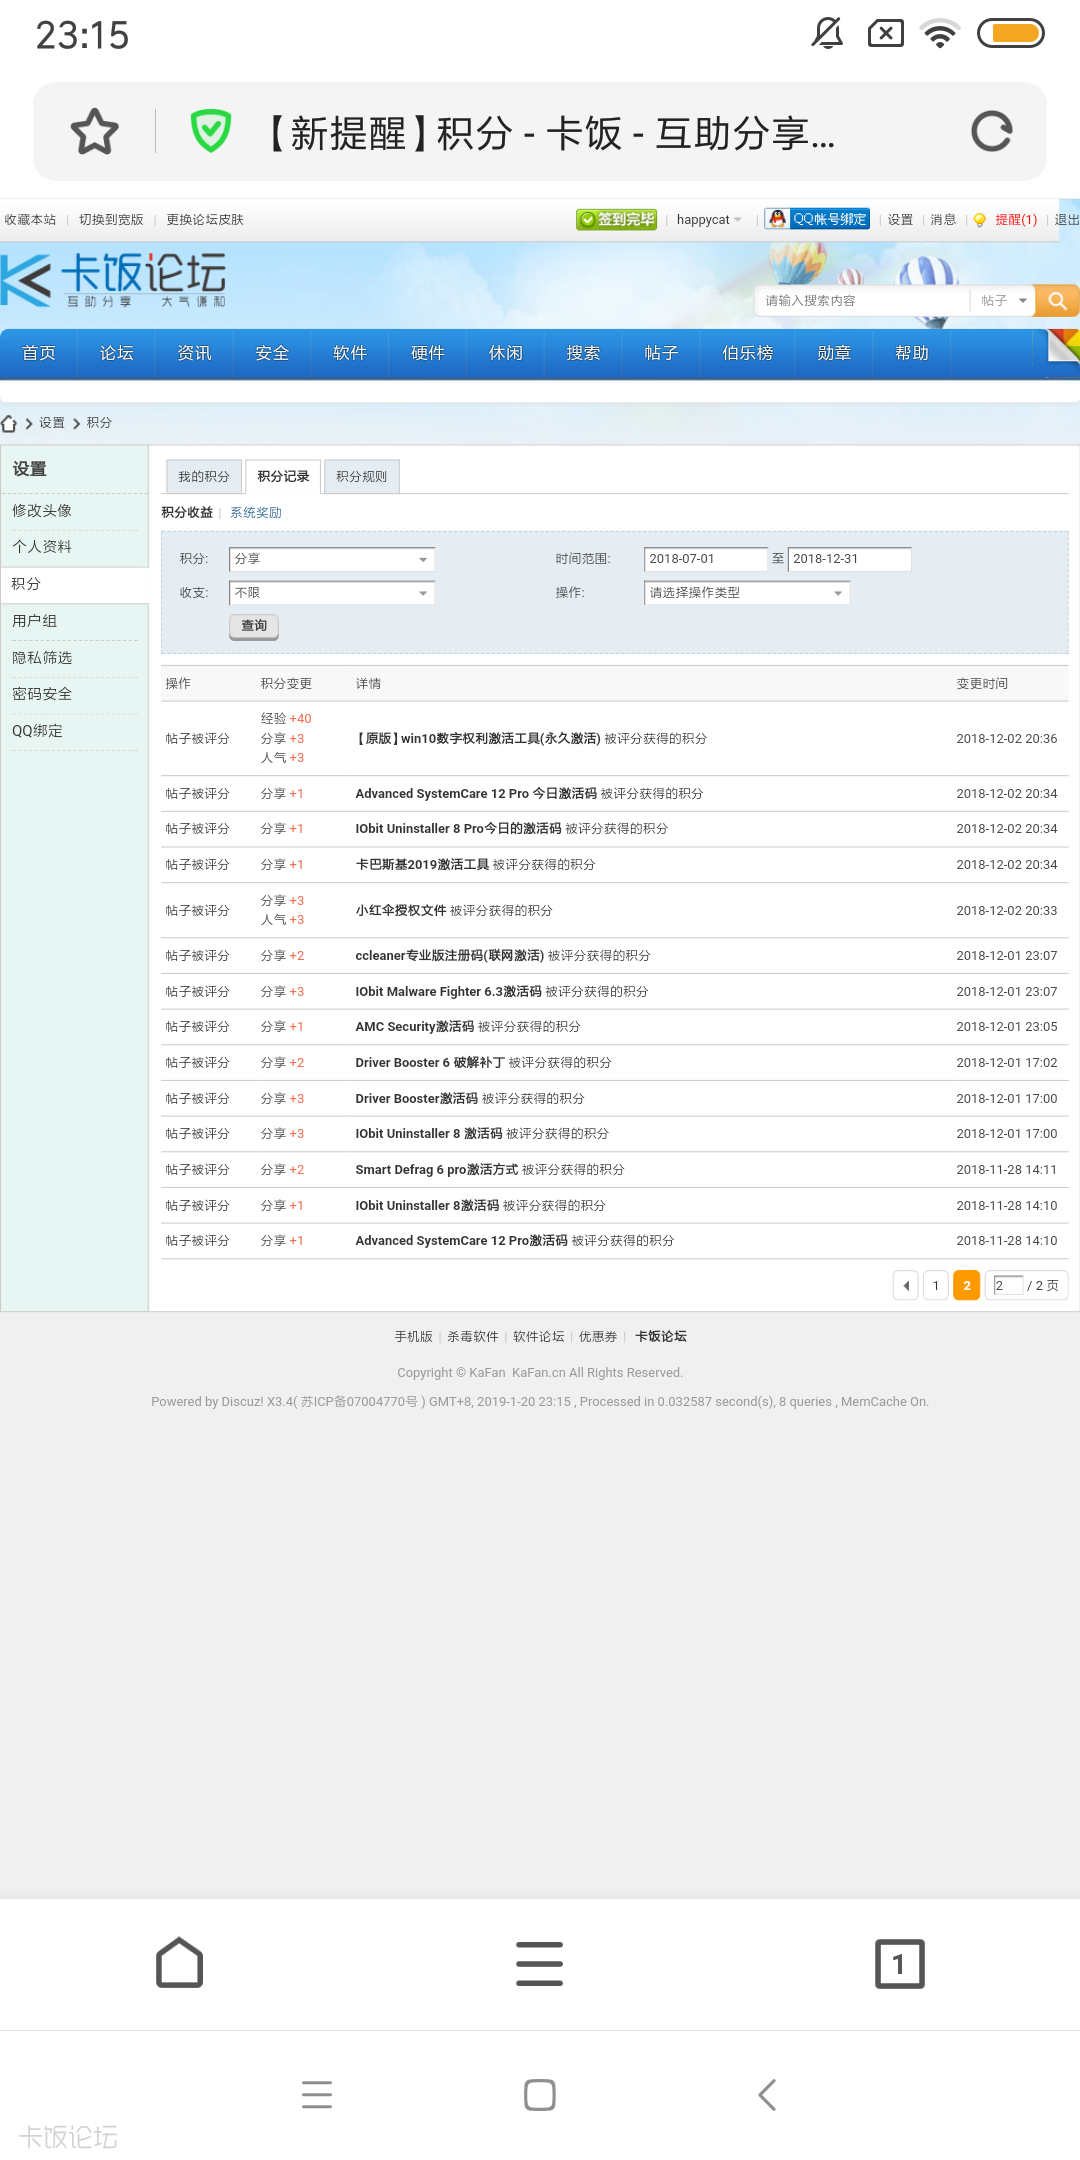 Screenshot_2019-01-20-23-15-52-908_com.qihoo.contents.png